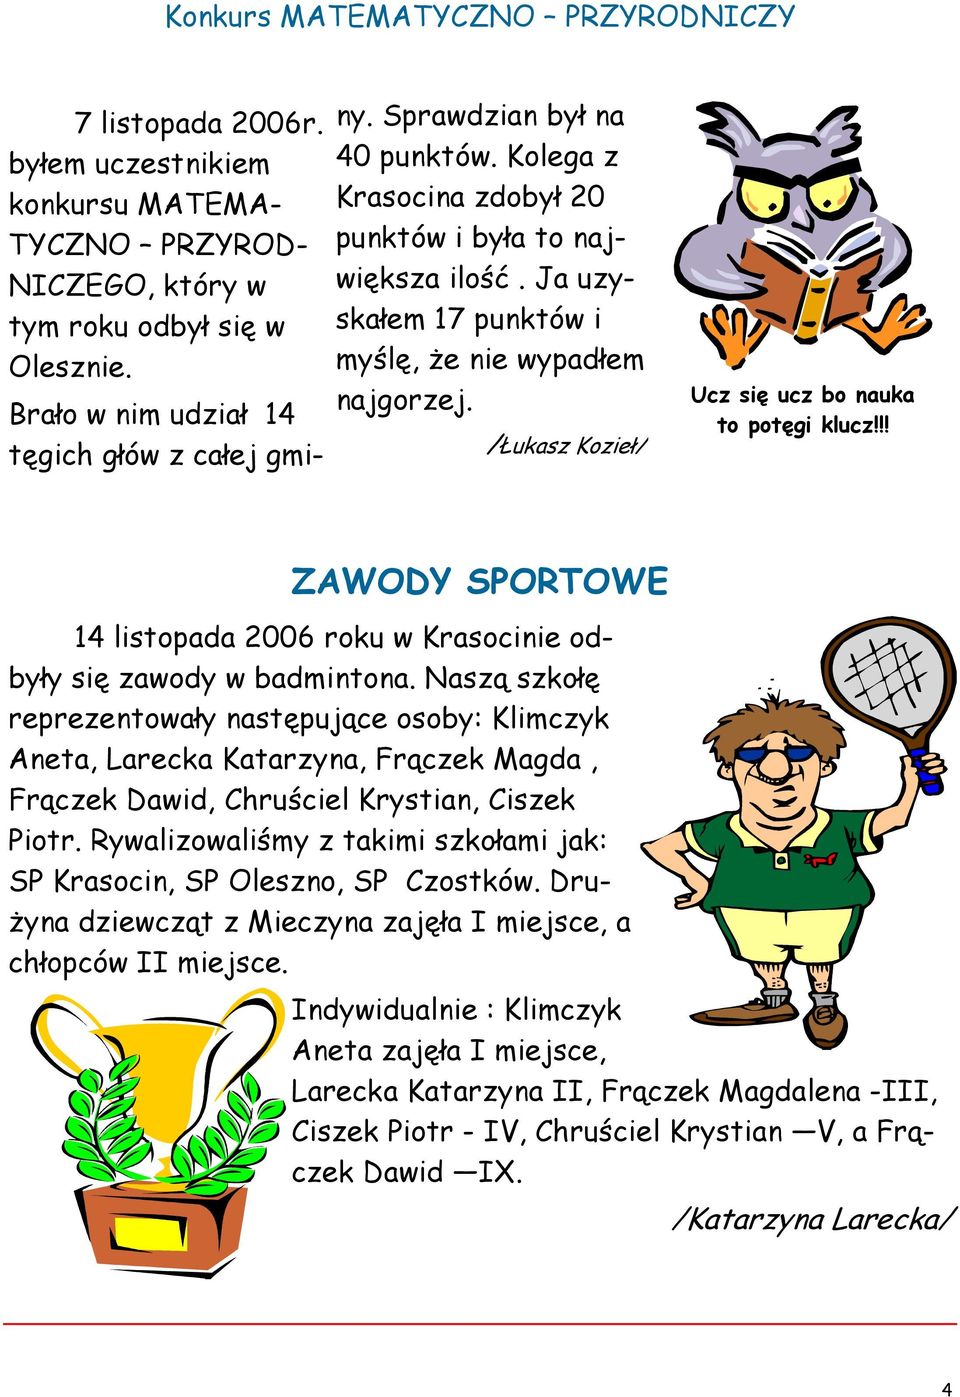 Ja uzyskałem 17 punktów i myślę, że nie wypadłem najgorzej. /Łukasz Kozieł/ Ucz się ucz bo nauka to potęgi klucz!!! ZAWODY SPORTOWE 14 listopada 2006 roku w Krasocinie odbyły się zawody w badmintona.